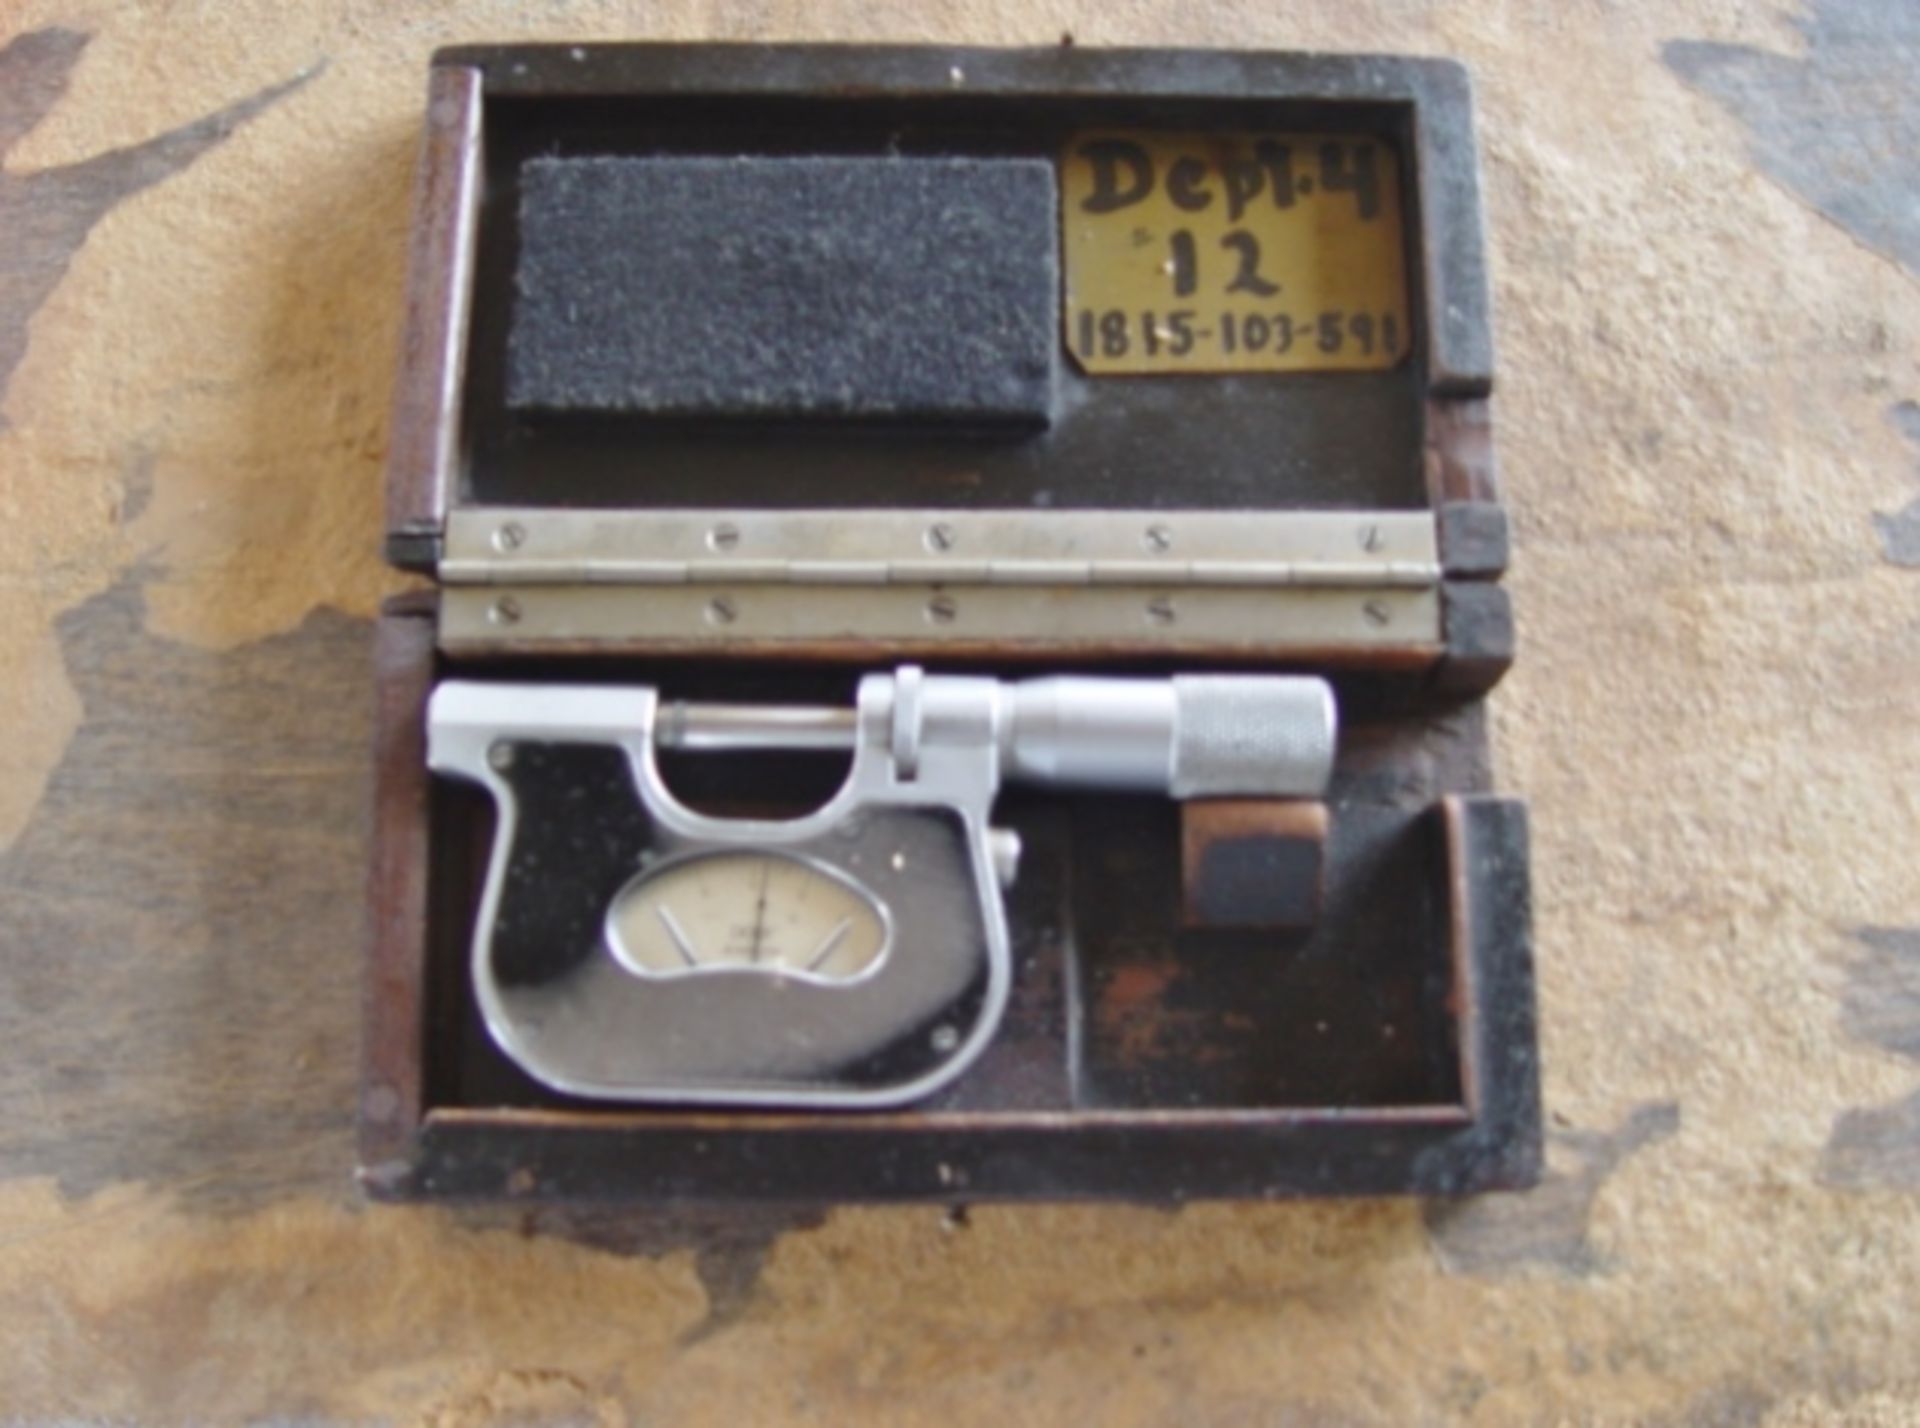 0-1" Micrometer